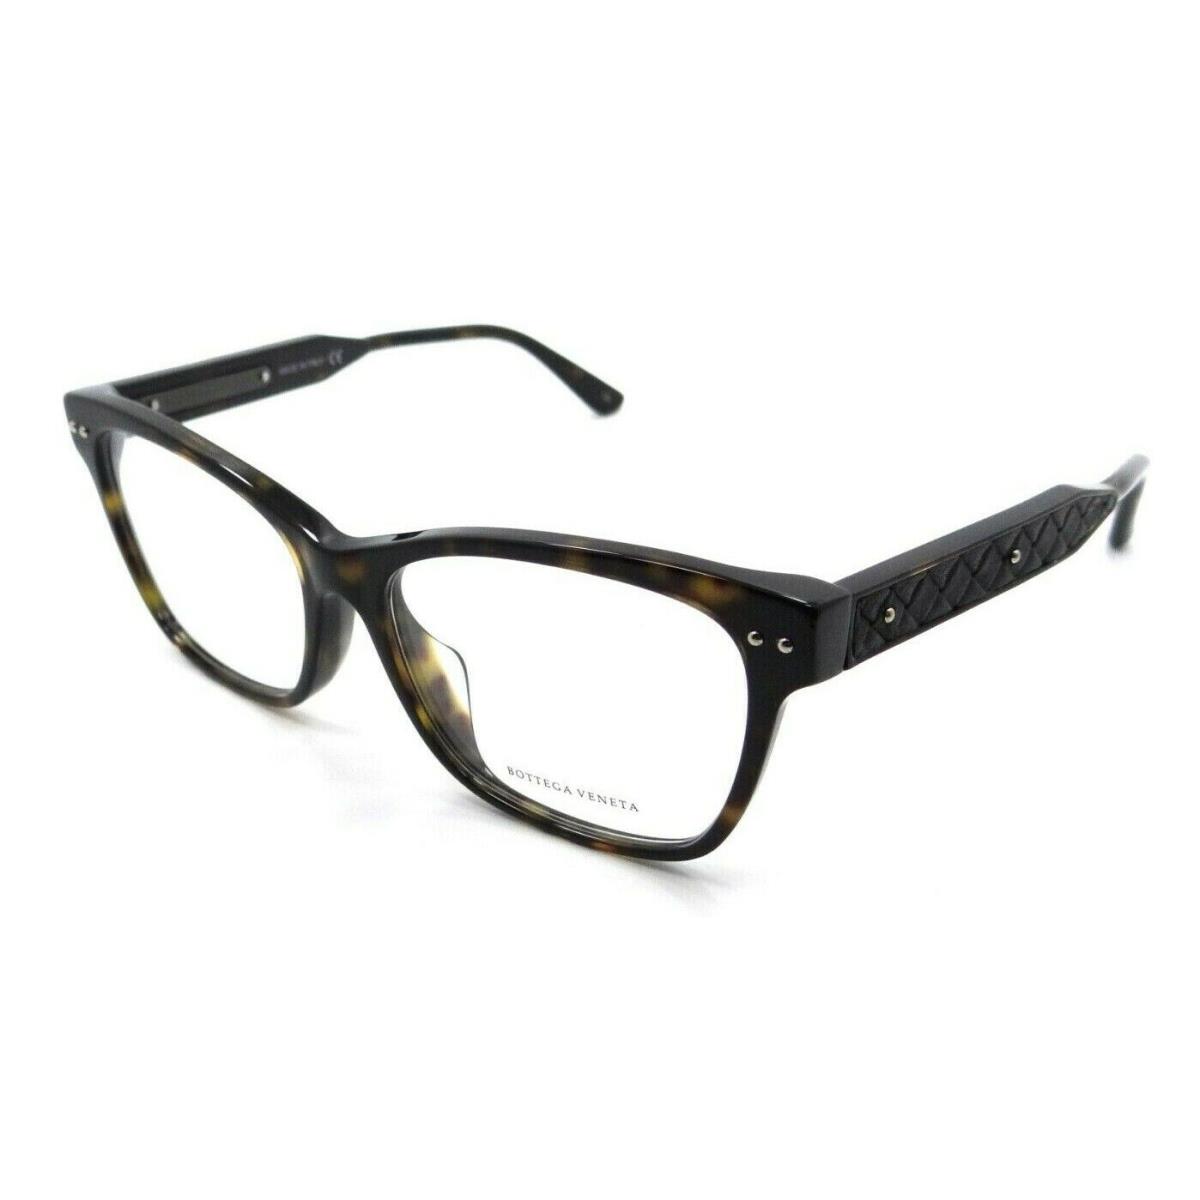 Bottega Veneta Eyeglasses Frames BV0016OA 002 53-15-145 Havana / Black Asian Fit - Frame: